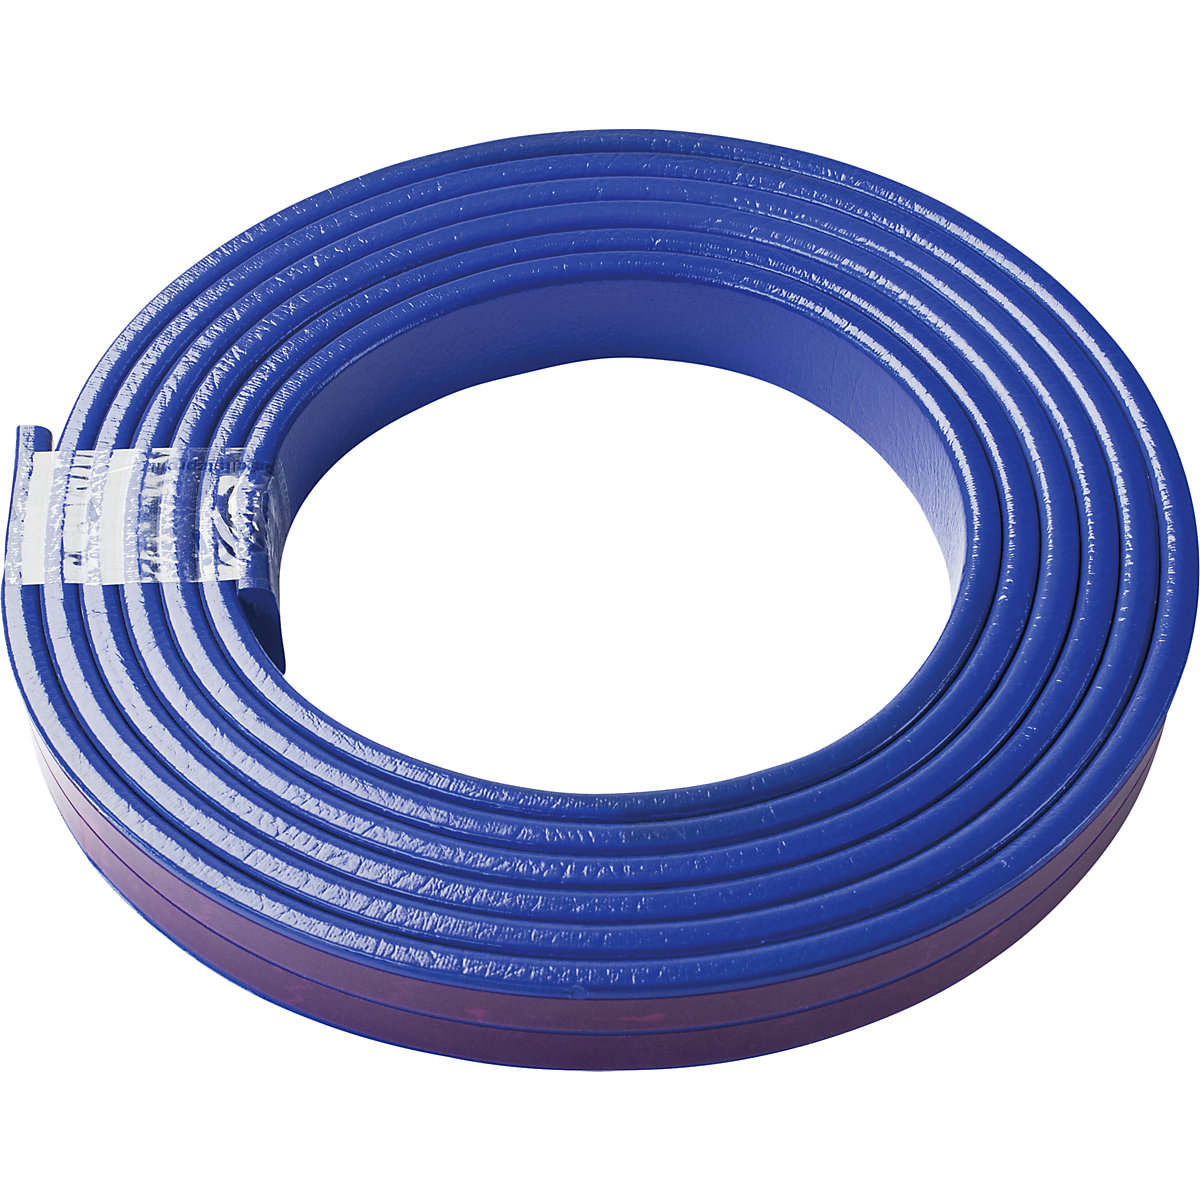 Knuffi® felületvédő – SHG, F típus, 1 db 5 m-es tekercs, kék-19